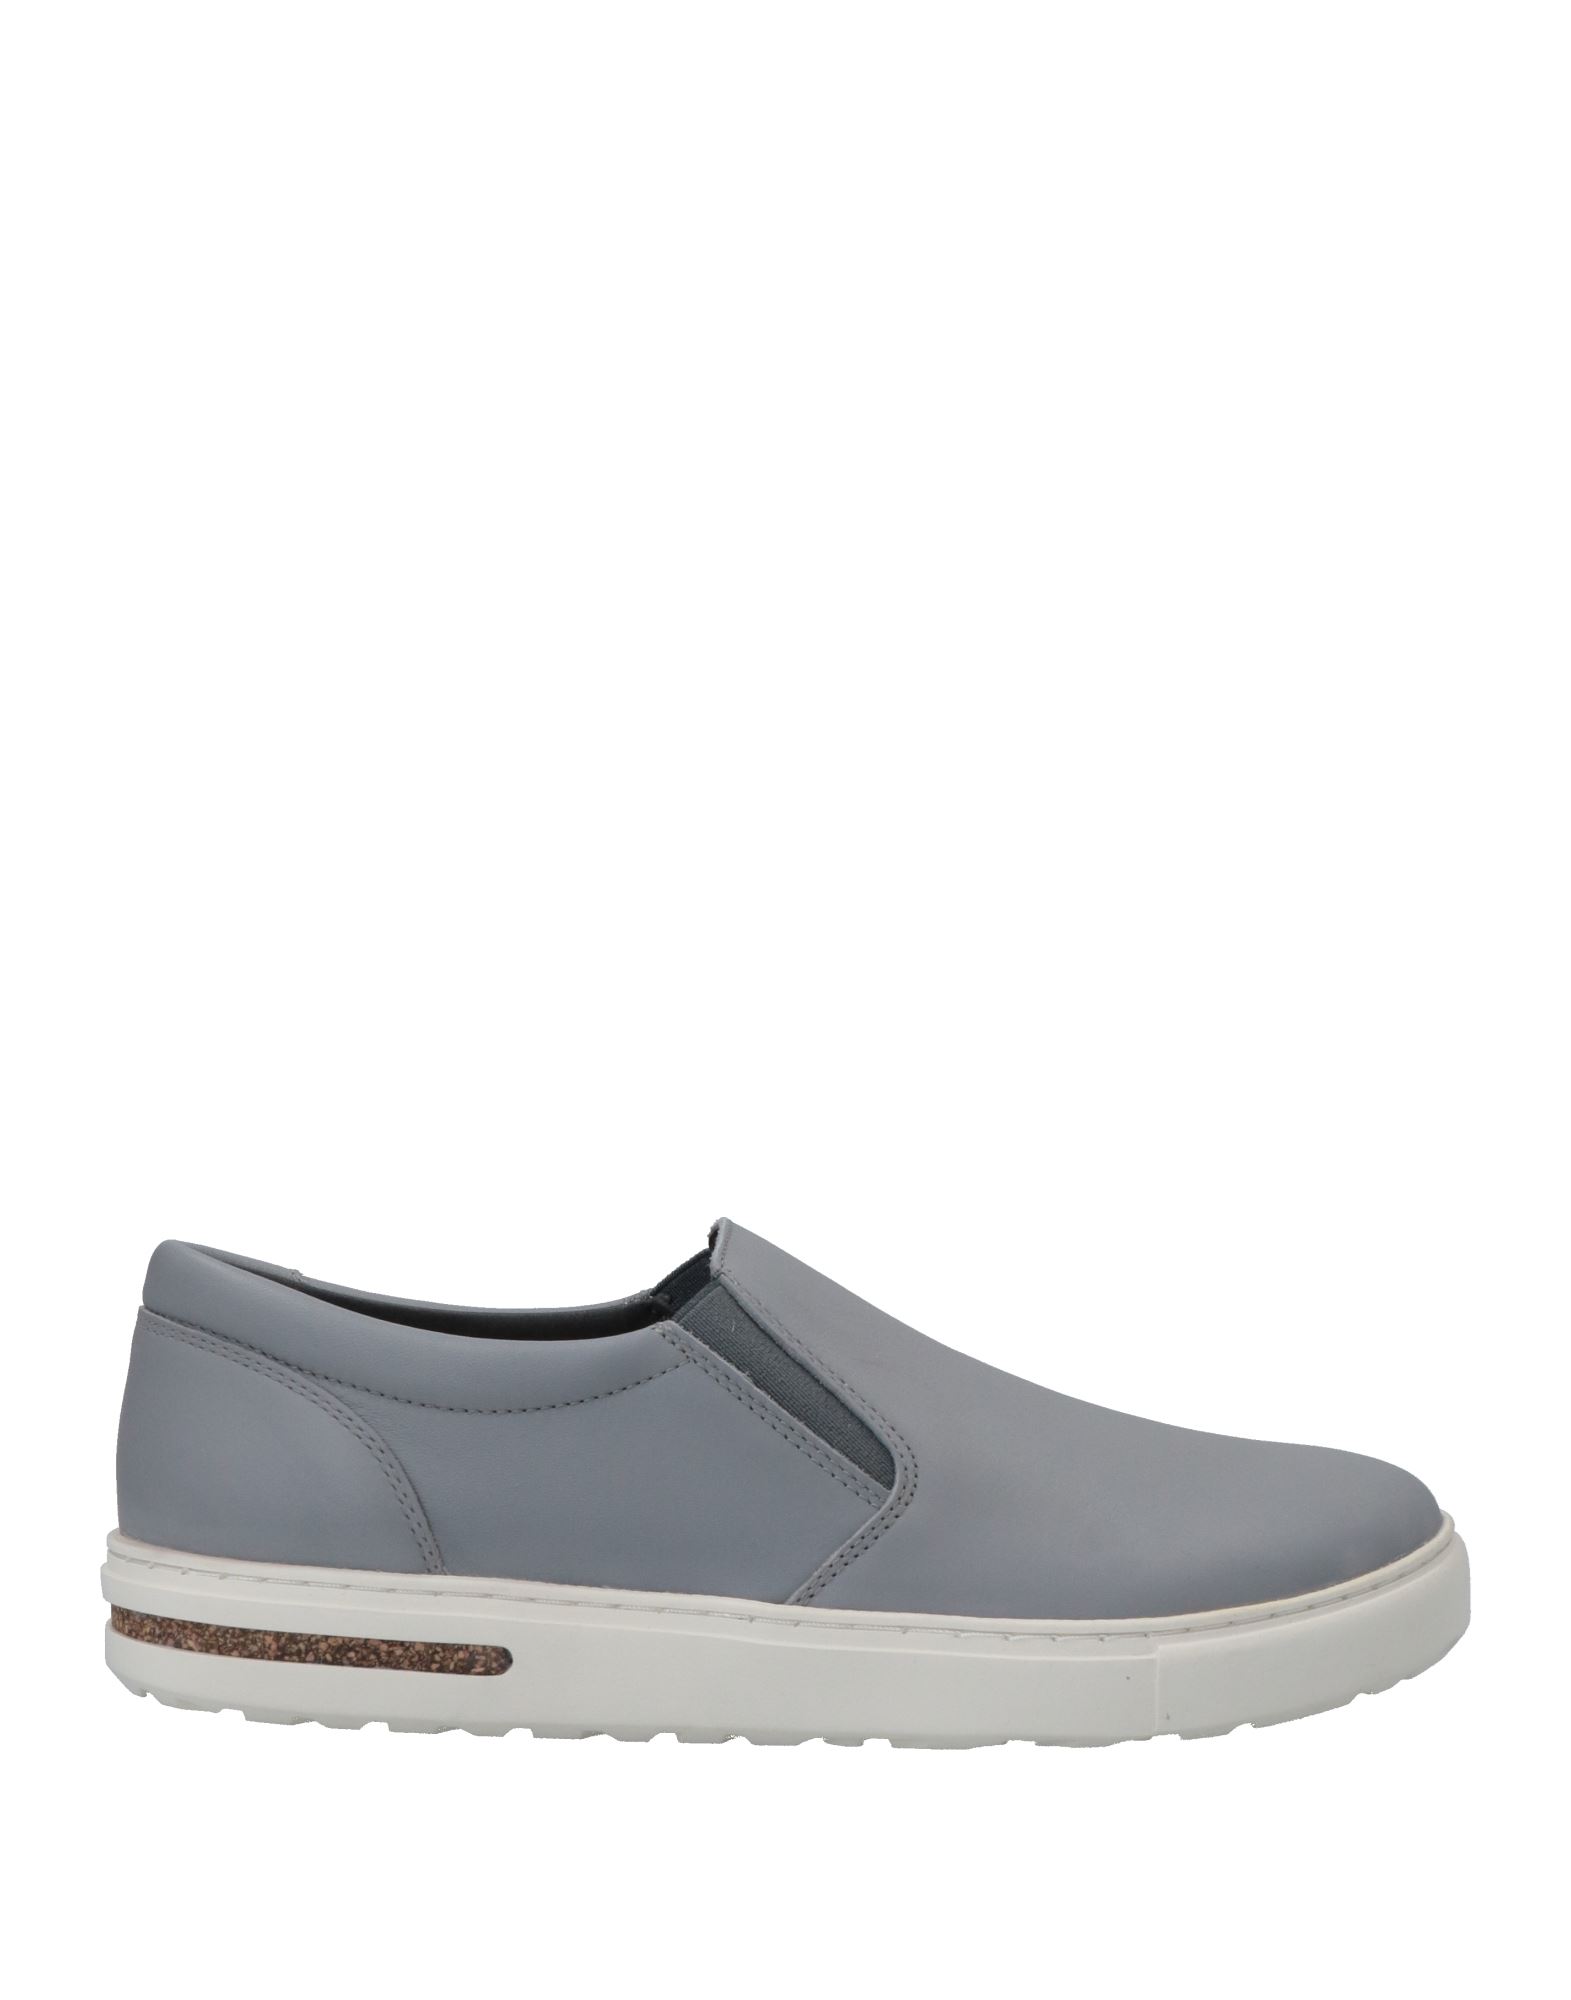 Shop Birkenstock Man Sneakers Grey Size 5 Leather